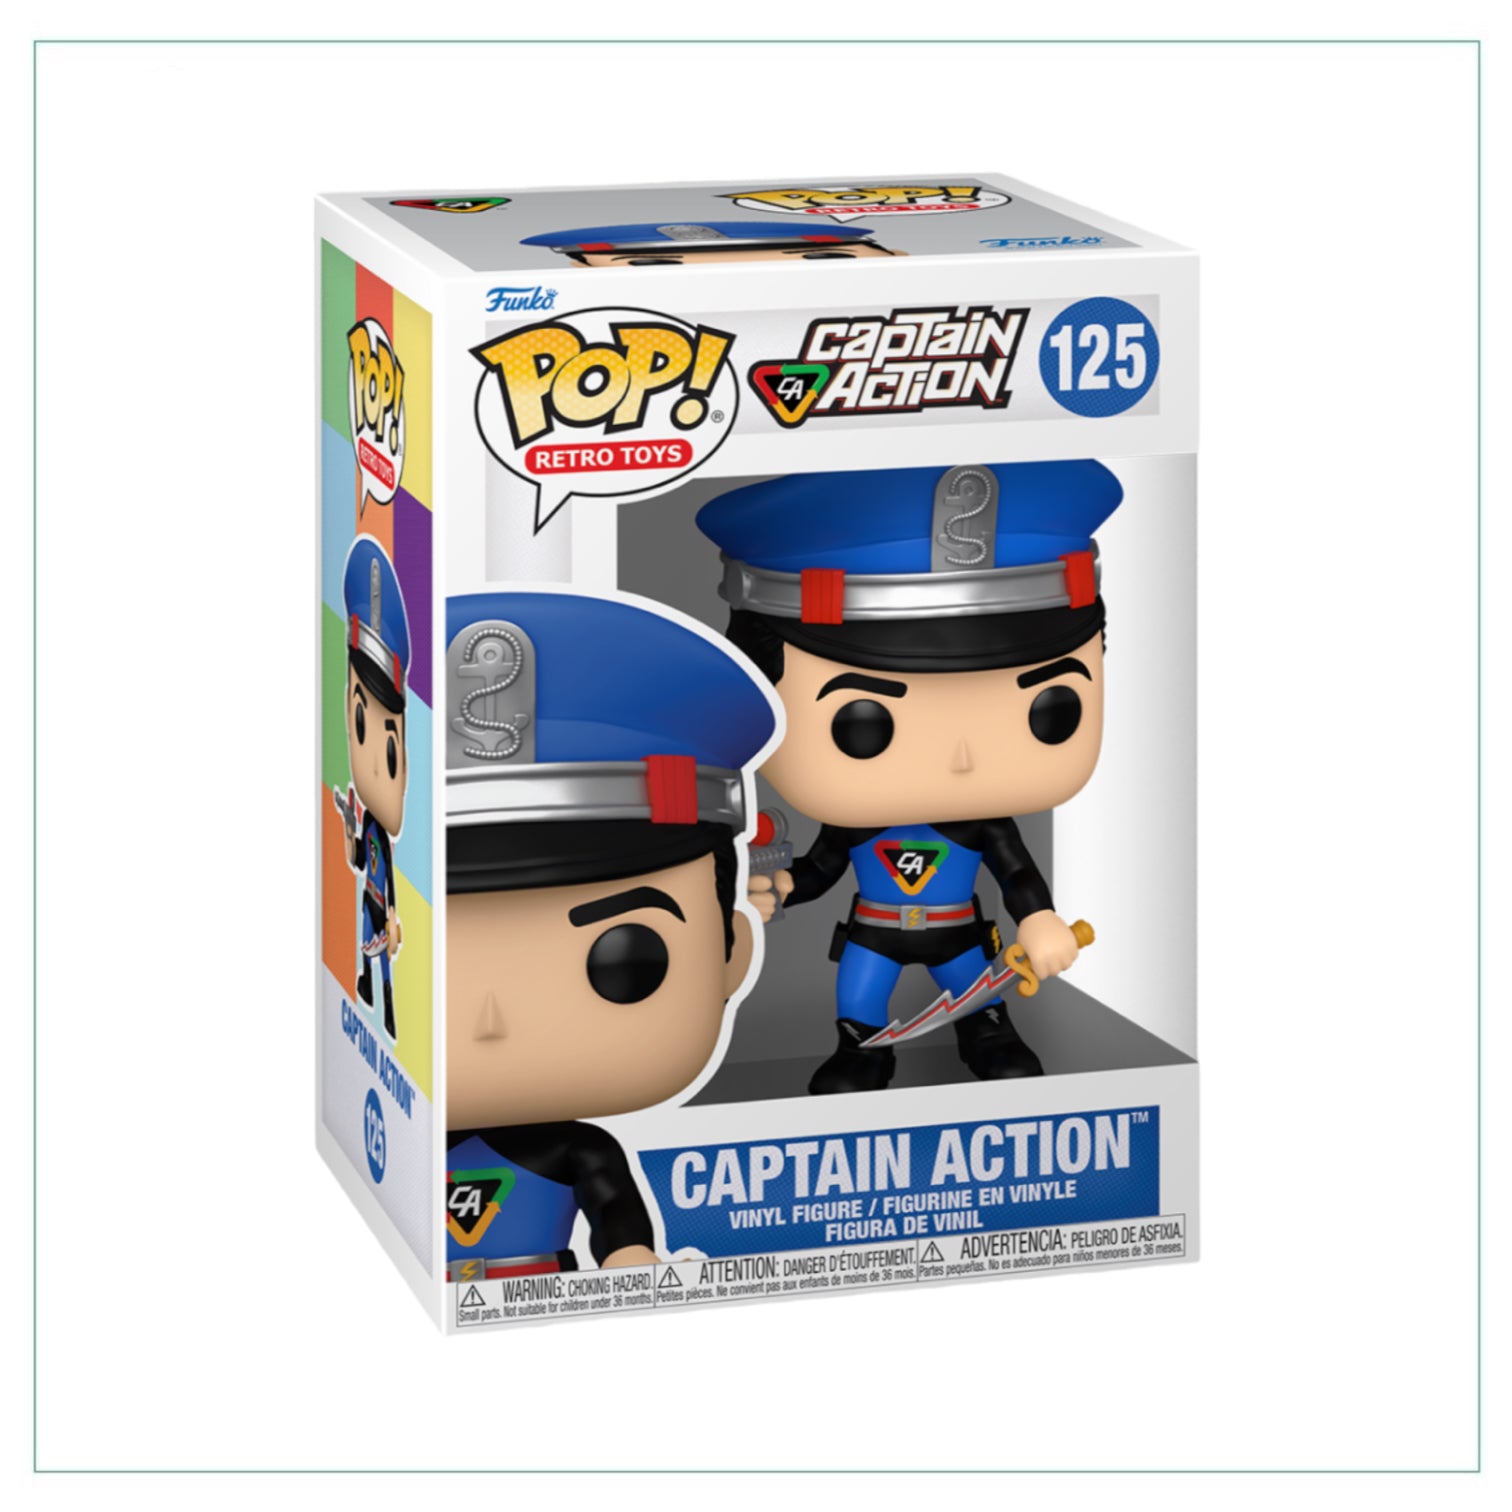 Captain Action #125 Funko Pop! Captain Action